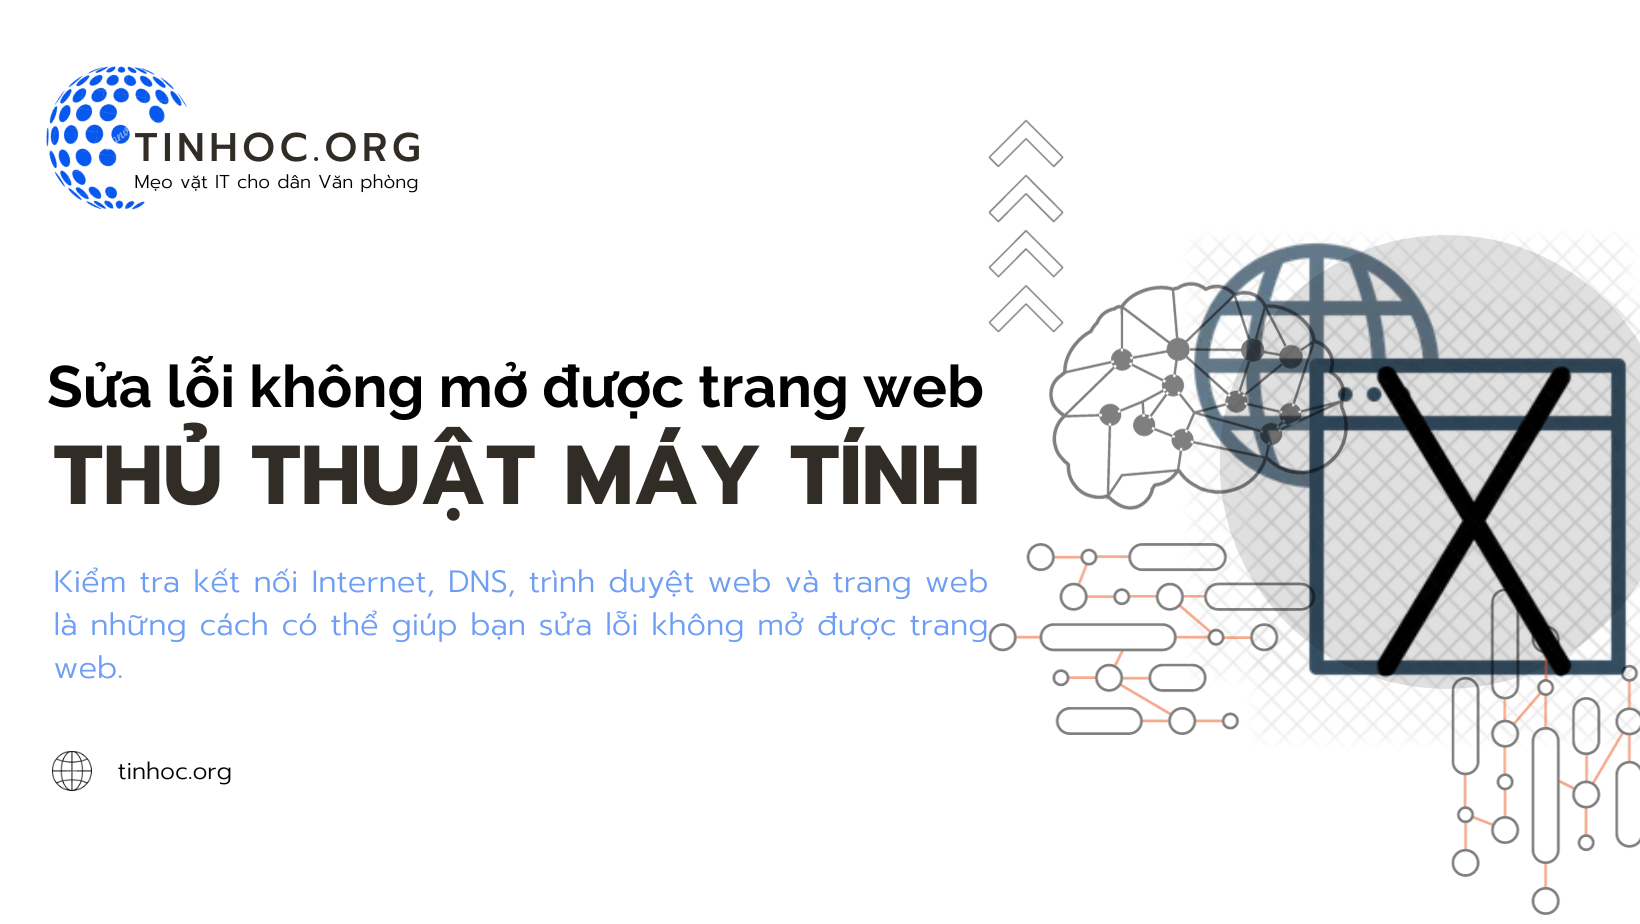 Kiểm tra kết nối Internet, DNS, trình duyệt web và trang web là những cách có thể giúp bạn sửa lỗi không mở được trang web.